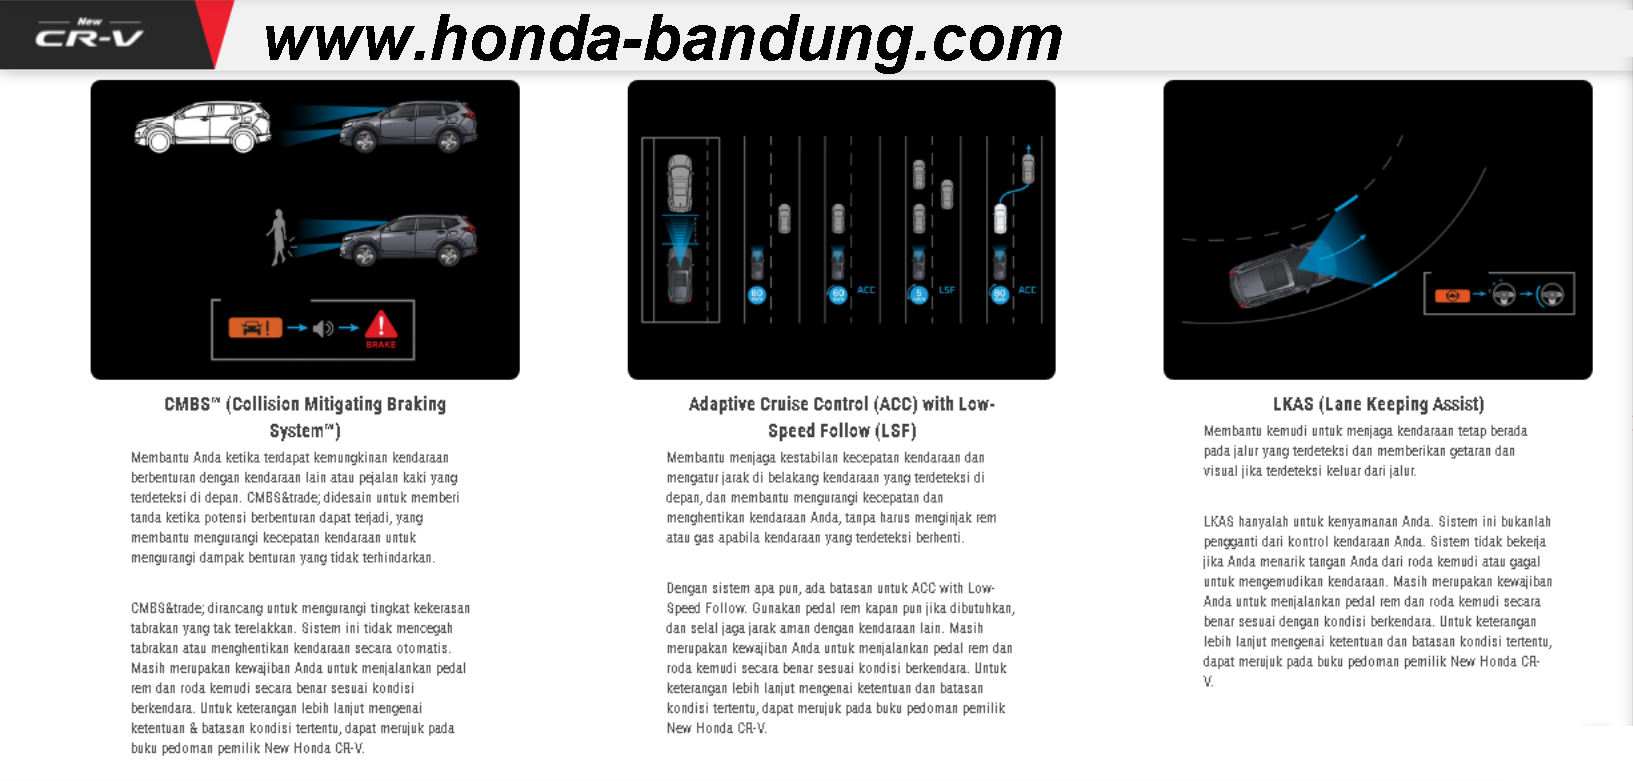 www.honda-bandung.com